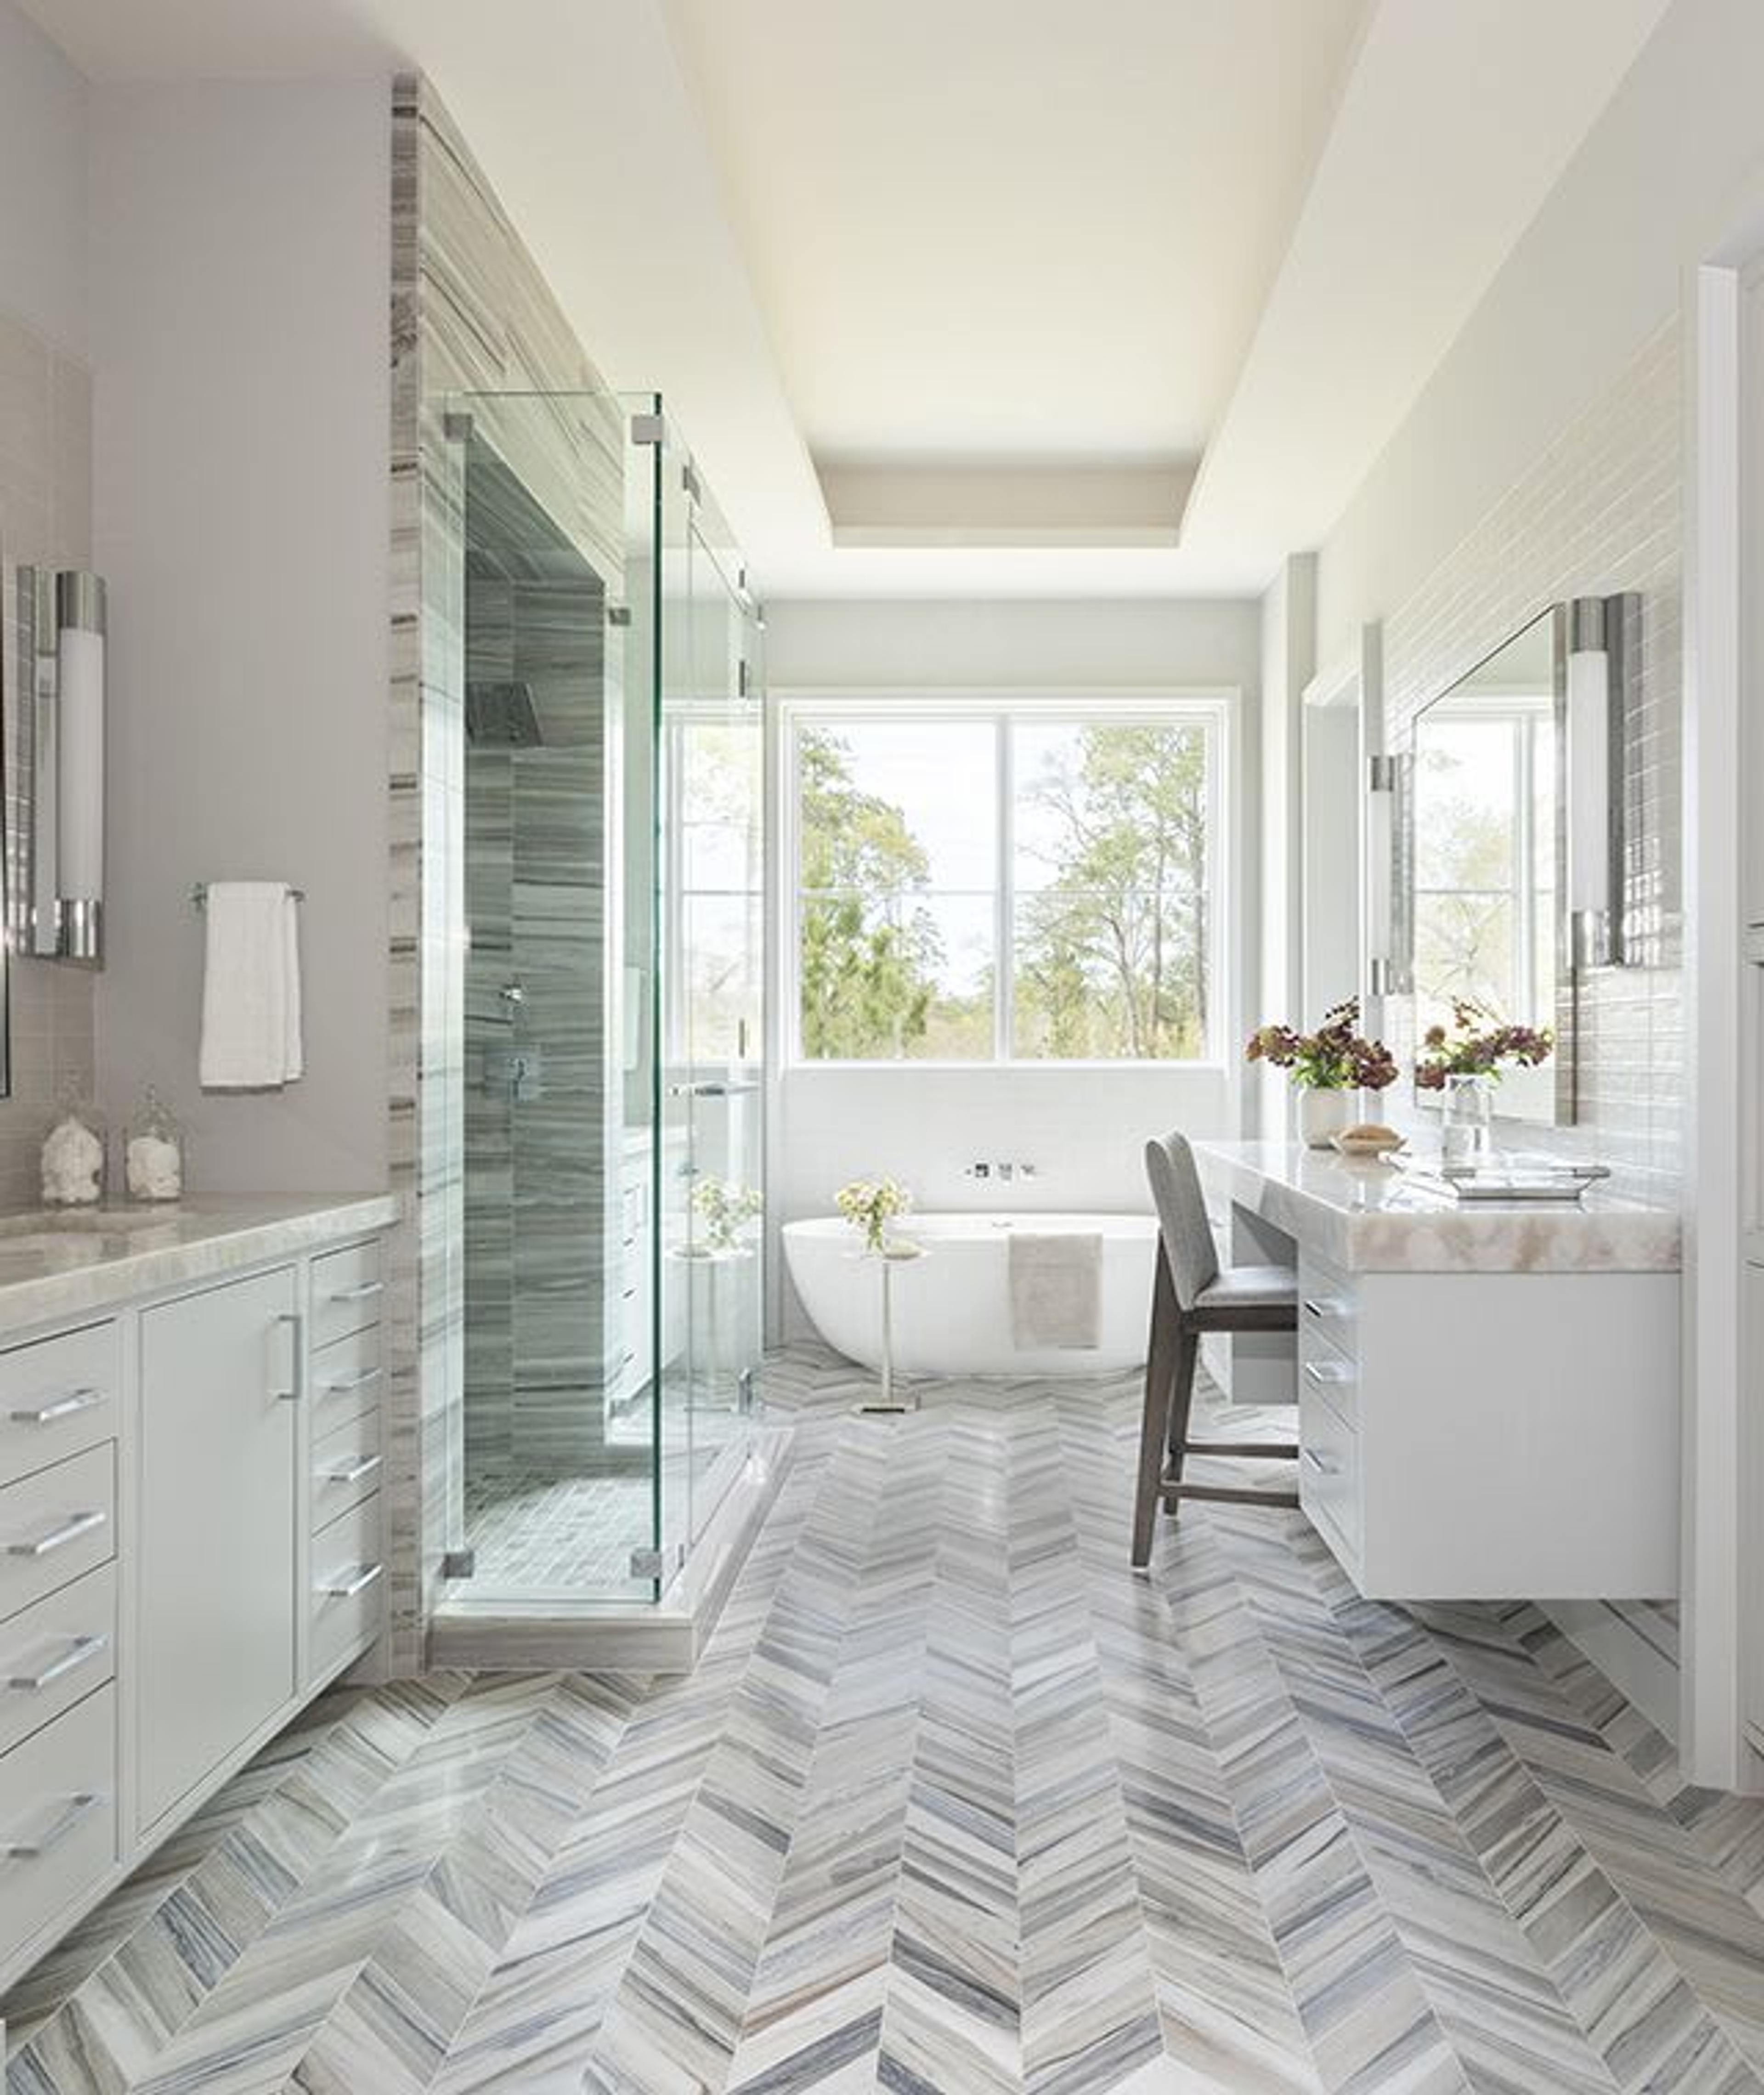 Un suelo de mármol en espiga juega con el contraste y proporciona una pasarela hacia los tocadores dobles y la bañera de hidromasaje en este baño principal inspirado en un spa.